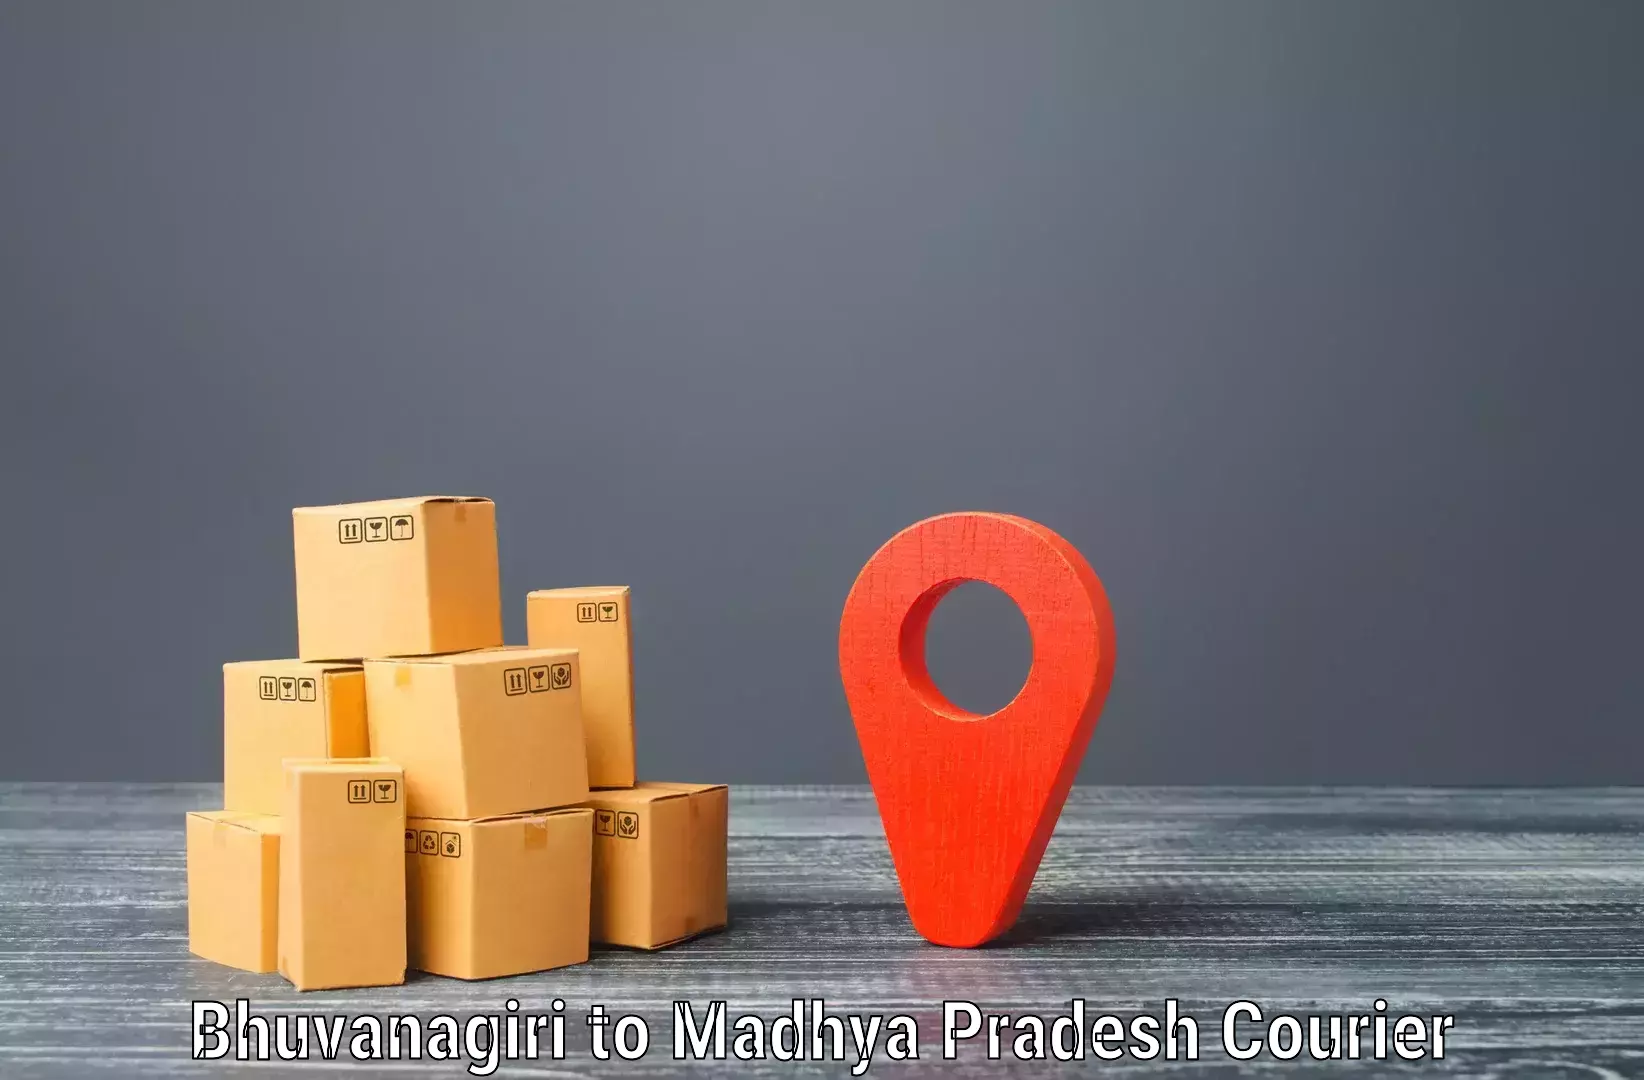 Cross-border shipping Bhuvanagiri to Lavkush Nagar